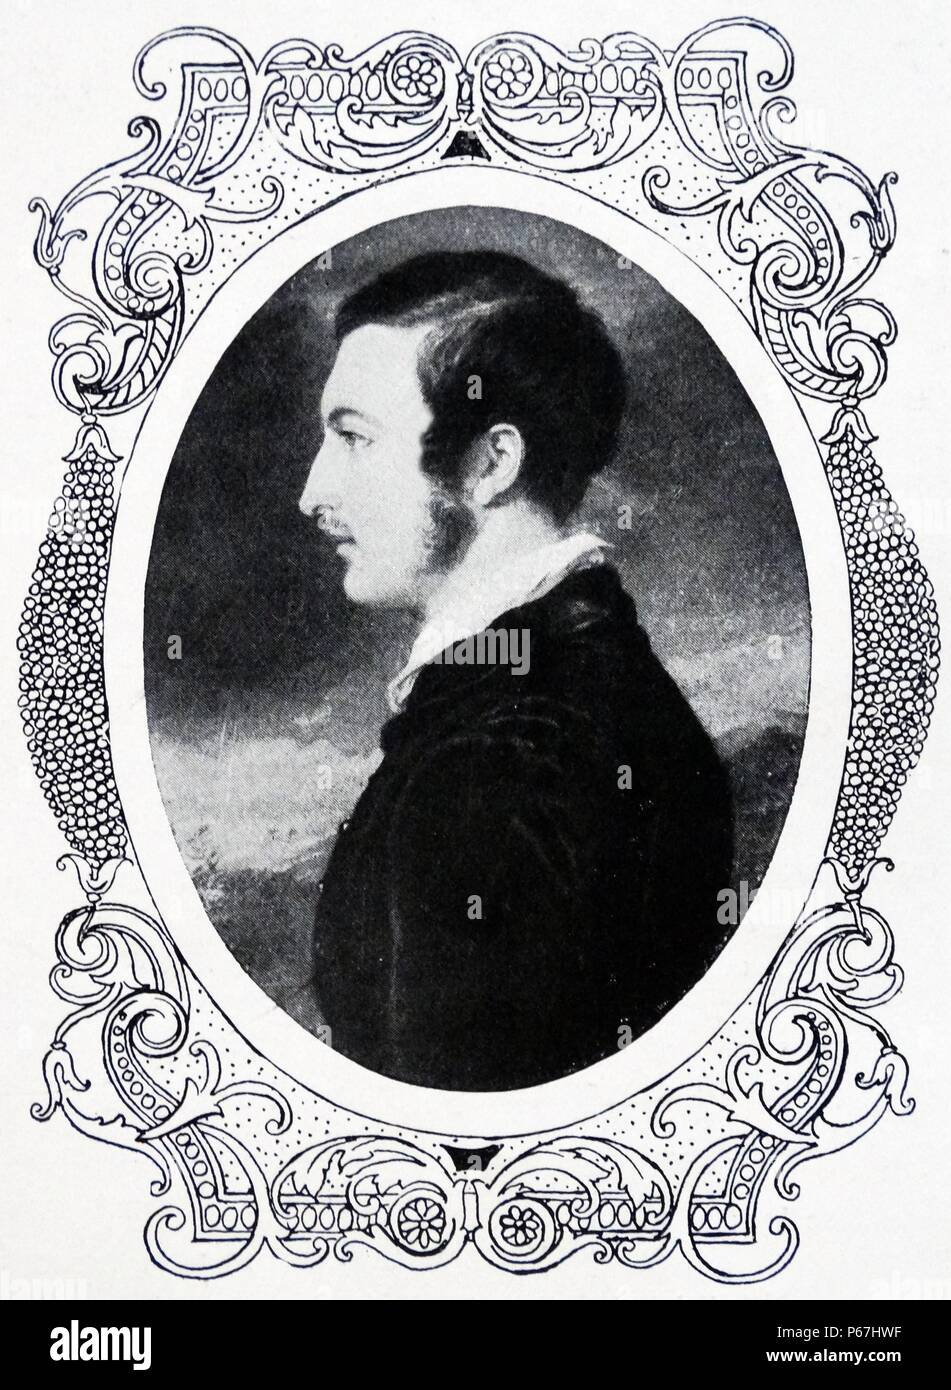 Prinz Albert von Sachsen-Coburg und Gotha (Prince Consort). 26. August 1819 - 14. Dezember 1861) Ehemann von Königin Victoria des Vereinigten Königreichs von Großbritannien und Irland. Stockfoto